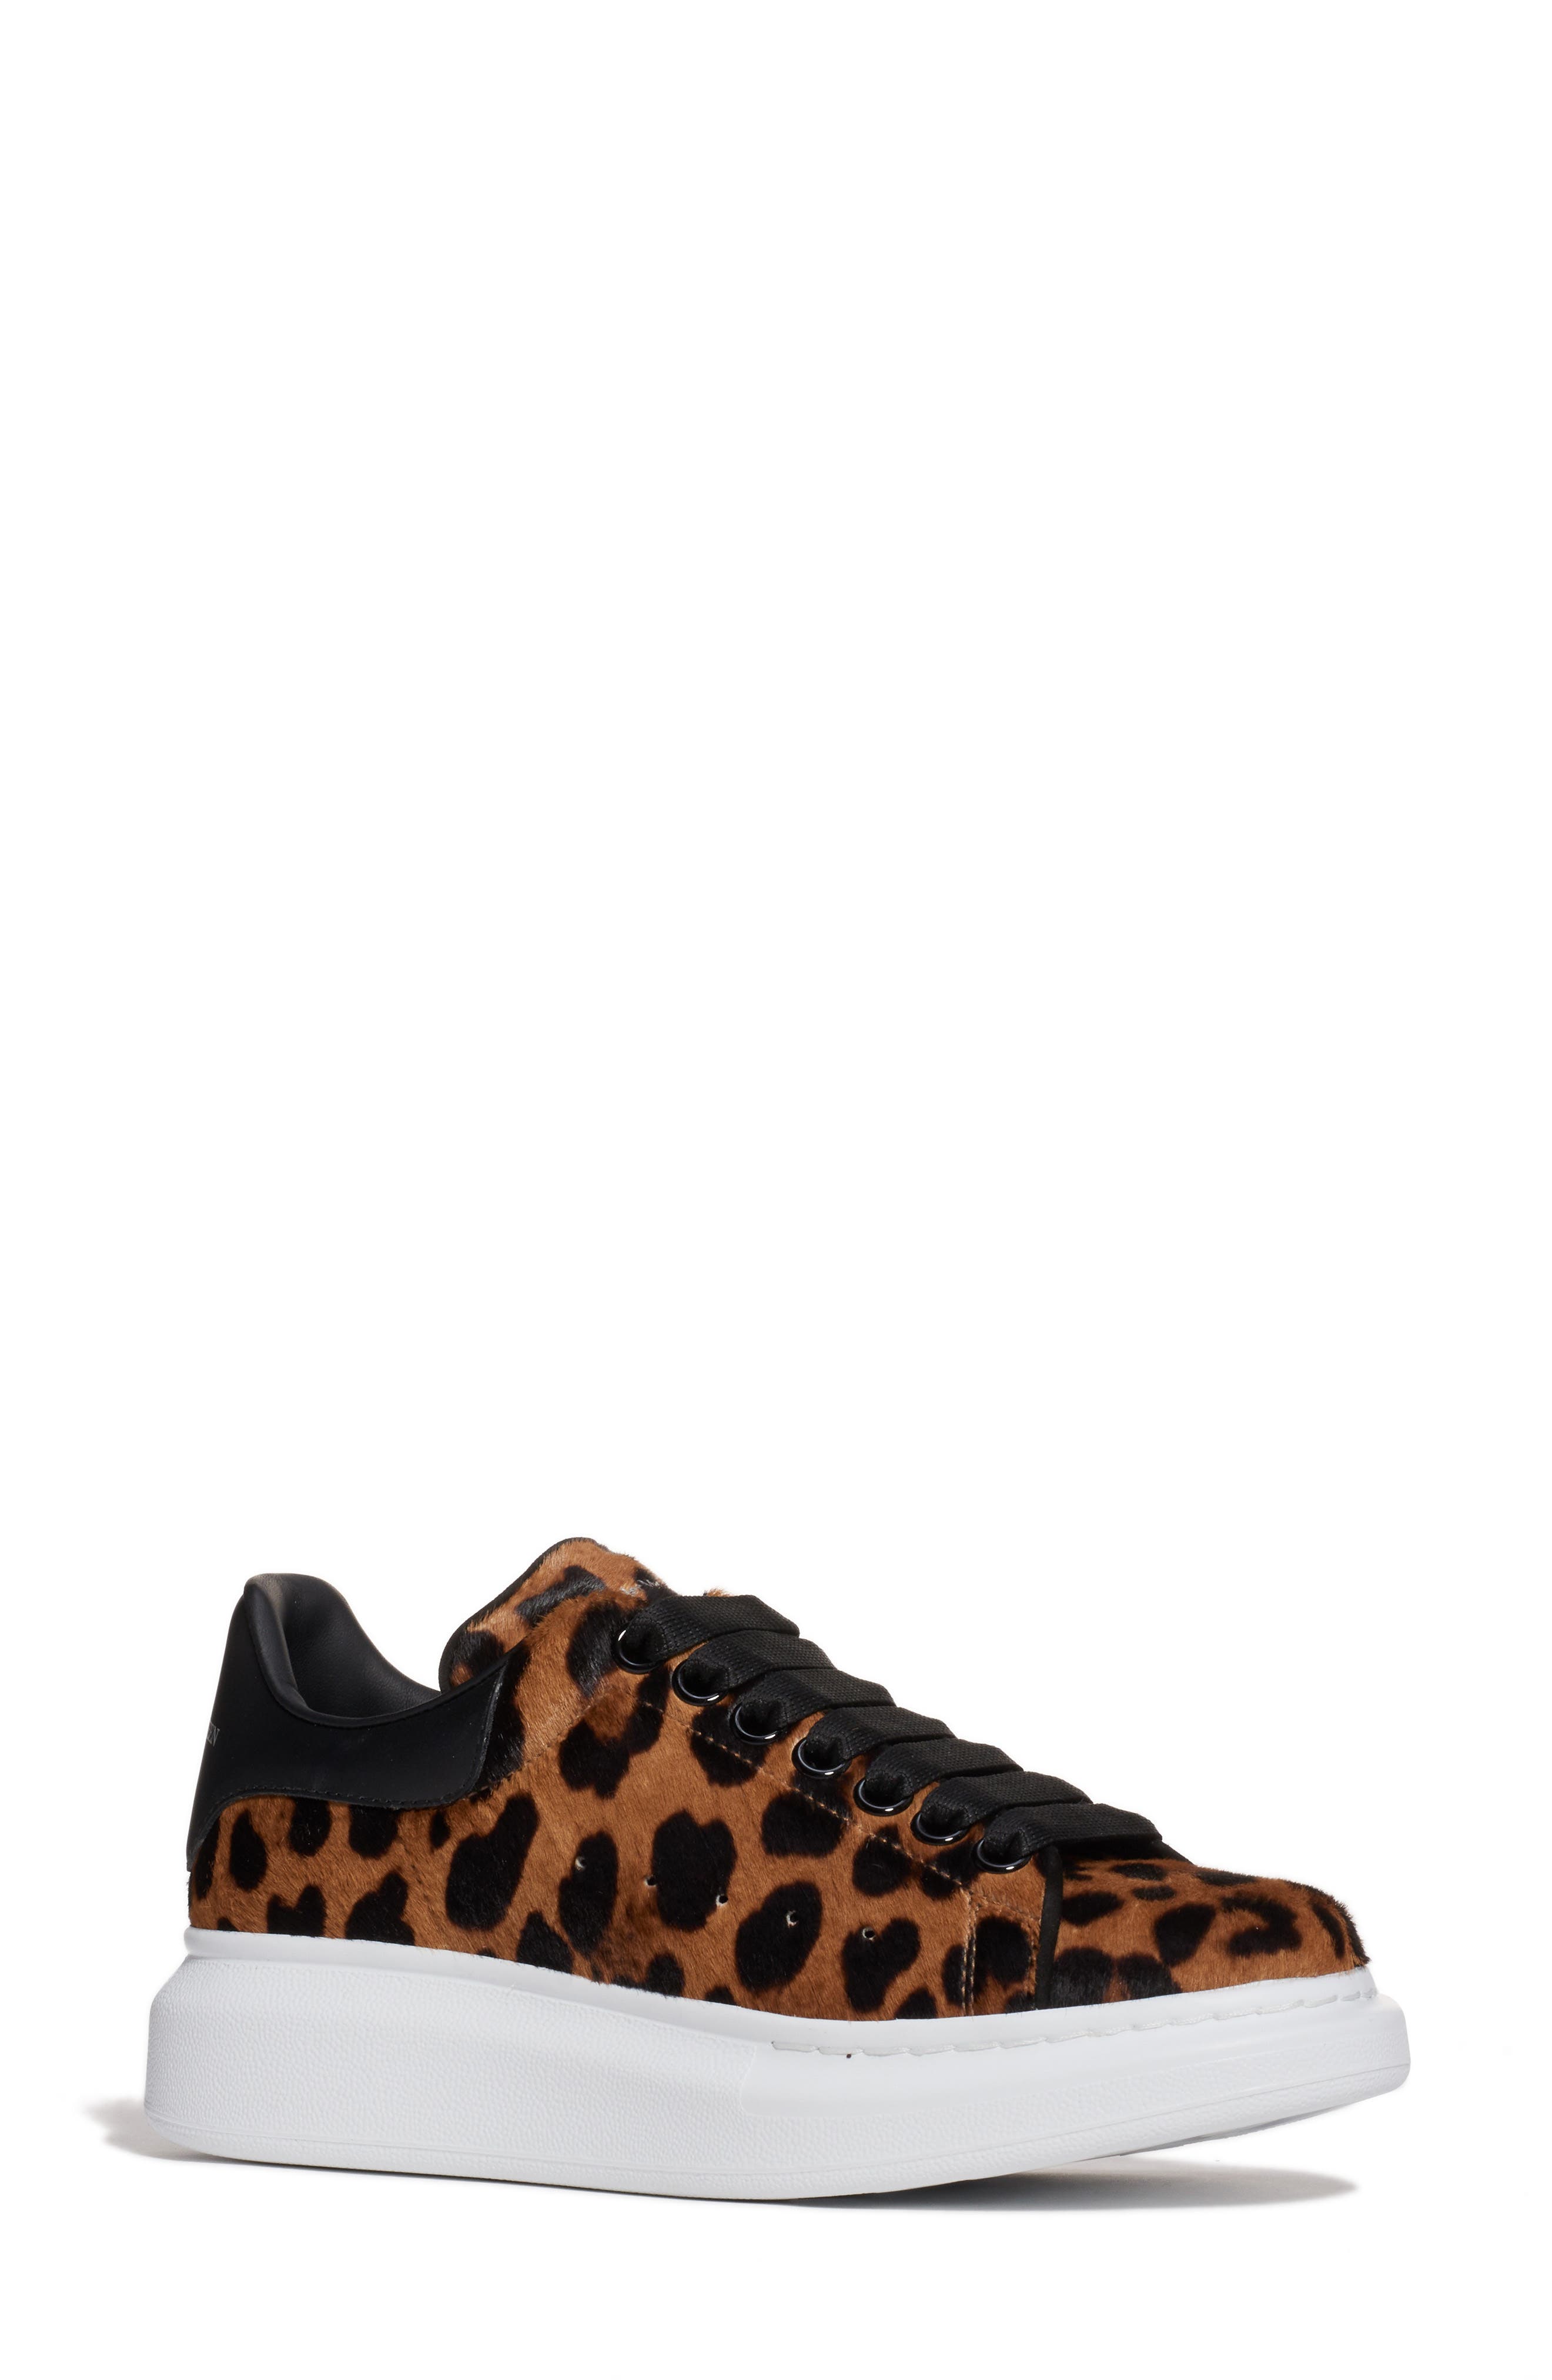 alexander mcqueen leopard shoes